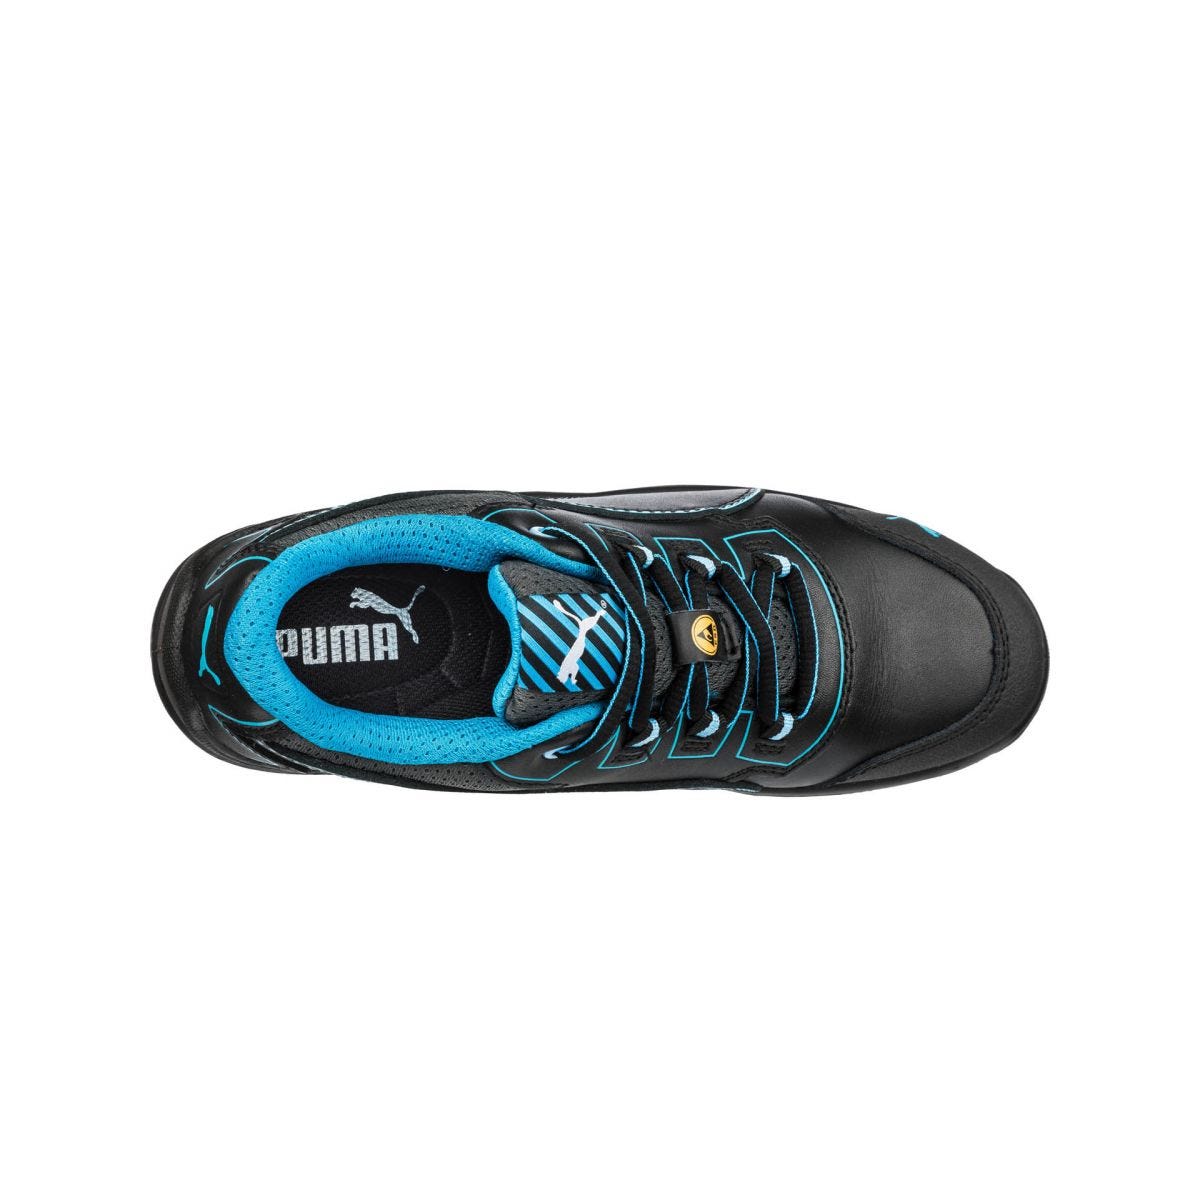 Chaussures de sécurité Niobe low WNS S3 ESD SRC bleu - Puma - Taille 37 2